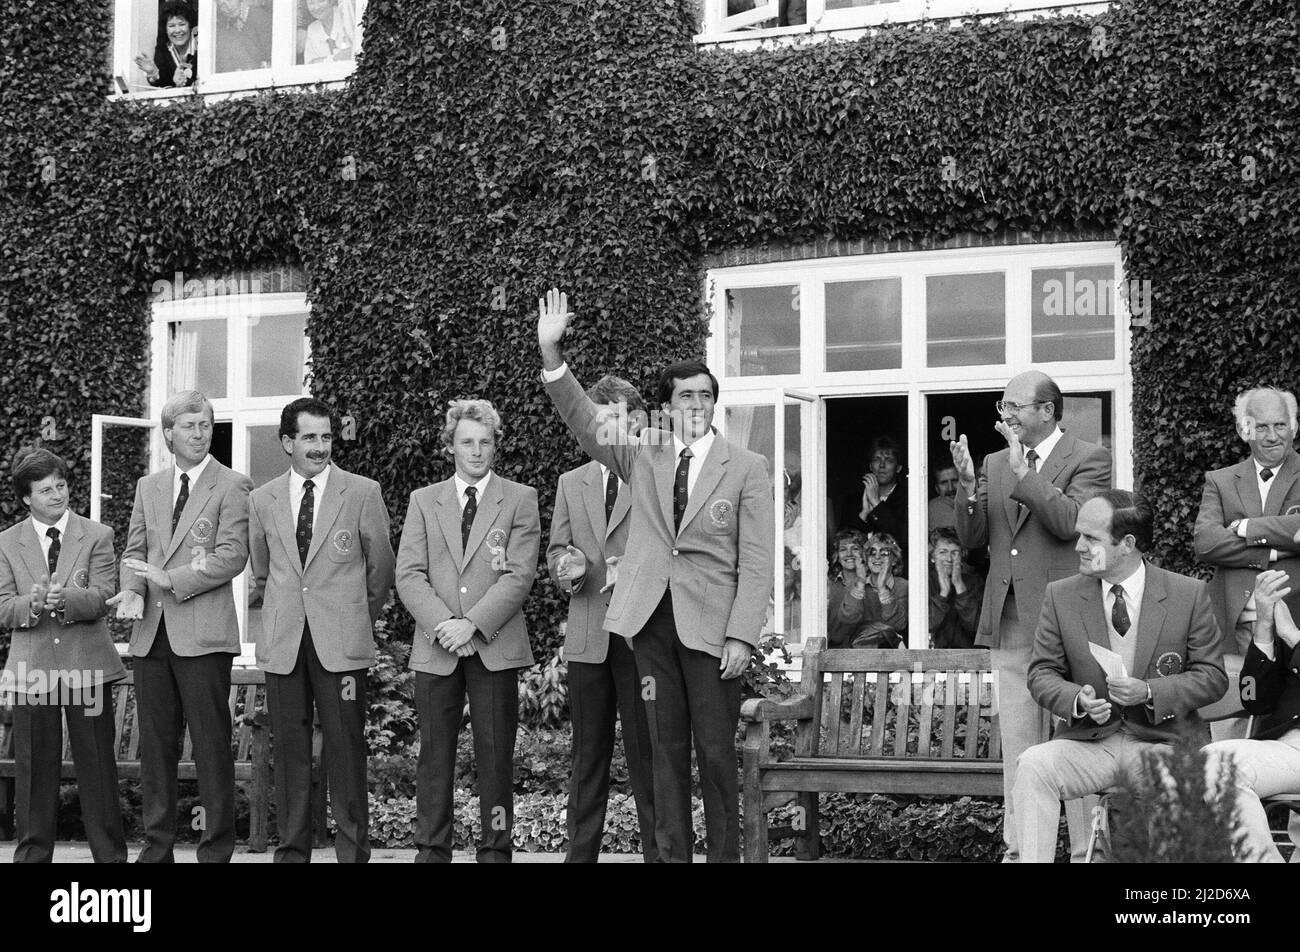 Das Ryder Cup Turnier fand vom 13.. Bis 15.. September 1985 auf dem Brabazon Kurs des Belfry in Wishaw, Warwickshire statt. Team Europe gewann den Wettbewerb mit 16,5 bis 11,5 Punkten, was ihren ersten Sieg im Turnier markierte und 28 Jahre amerikanischer Dominanz beendete. Der Spieler des Teams Europe und der Torschützenkönig des Turniers, Seve Ballesteros, winken während der Trophäenübergabe der jubelnden Menge zu. 15.. September 1985. Stockfoto